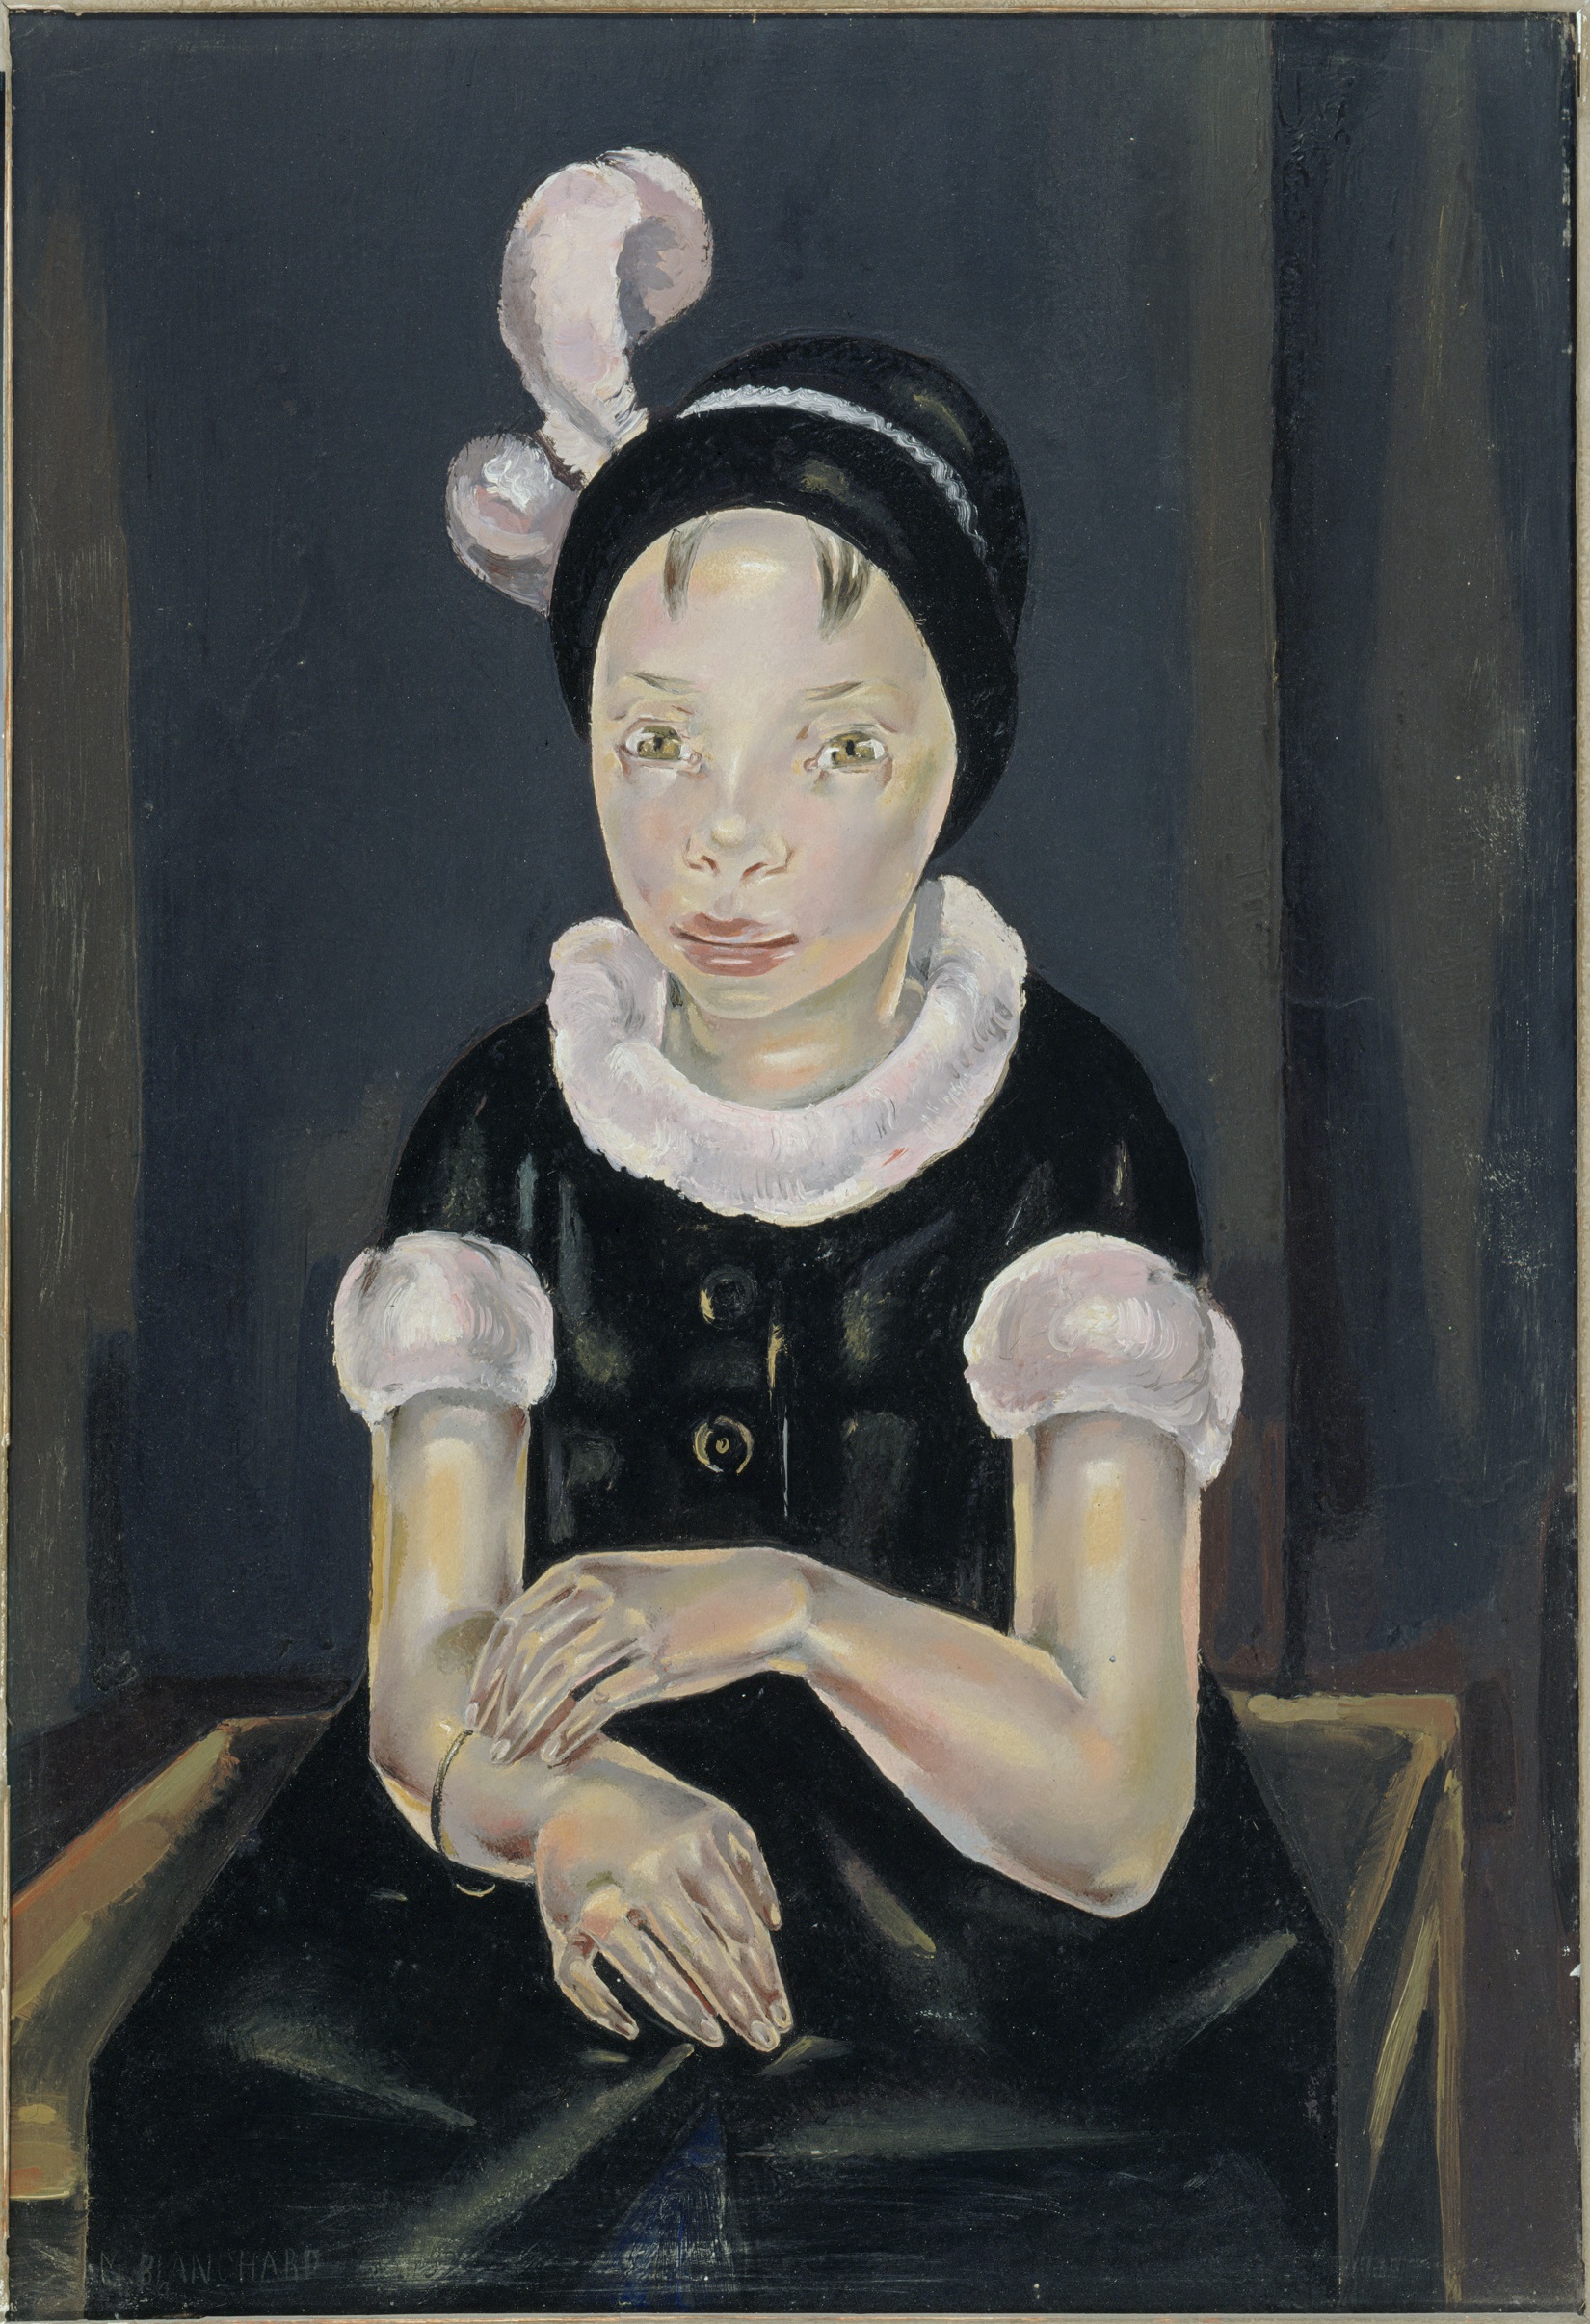 Maria Blanchard (1881-1932). "Fillette en noir et en rose". Huile sur toile, 1926. Paris, musée d'Art moderne.